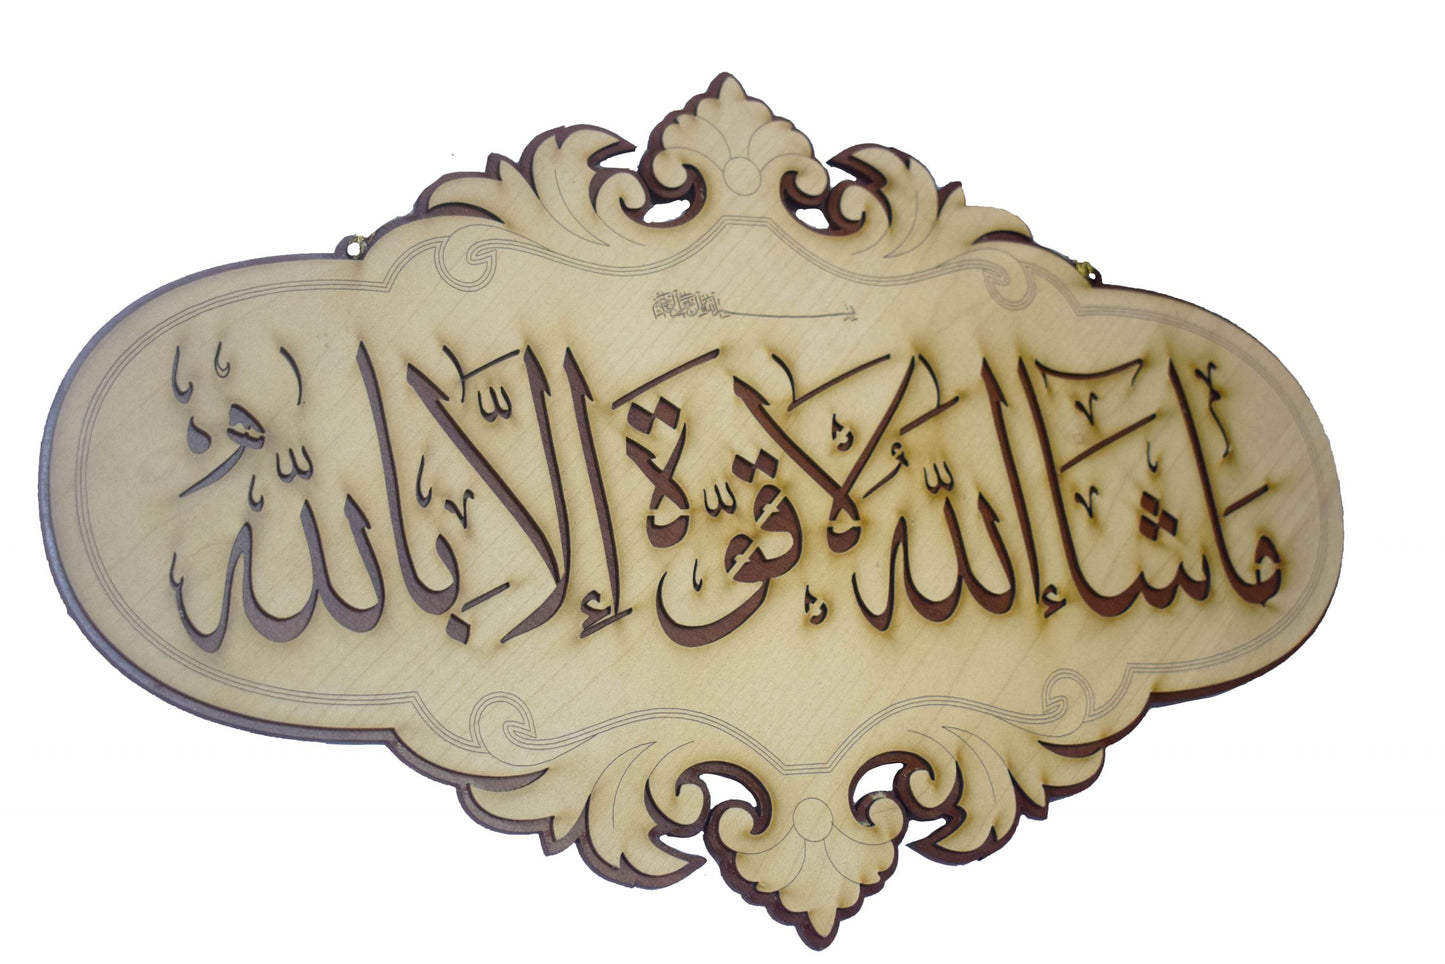 Islamic Wall Frame Wooden Home DÉCOR Wall Hanging KALMA E PAK “laa ilaahah illa allaah muhammadun rasool ullaah”| MASHALLAH| HAZA MIN FAZLI RABBI 10 INCH by 16 INCHES